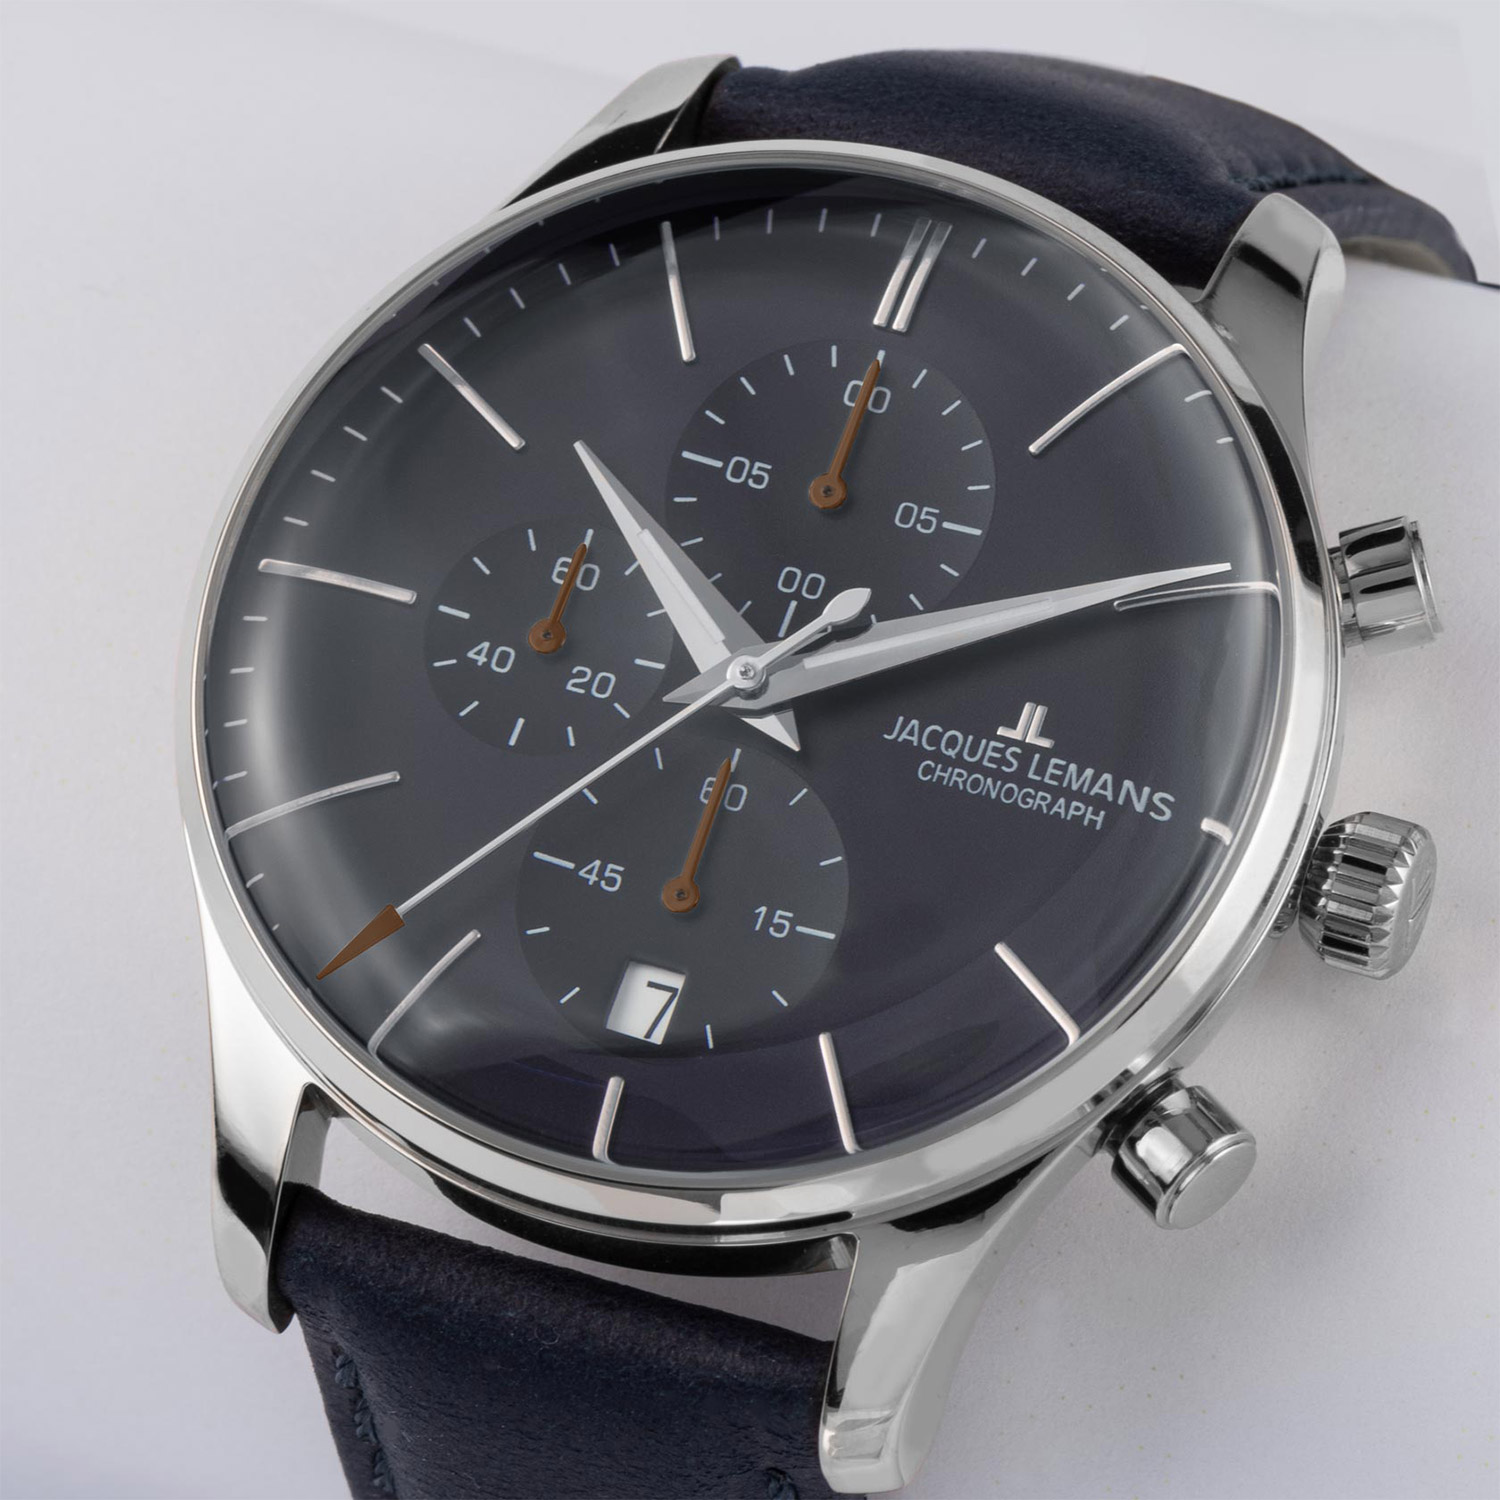 Jacques Lemans Men's Watch Chronograph London Blue 1-2163C • uhrcenter